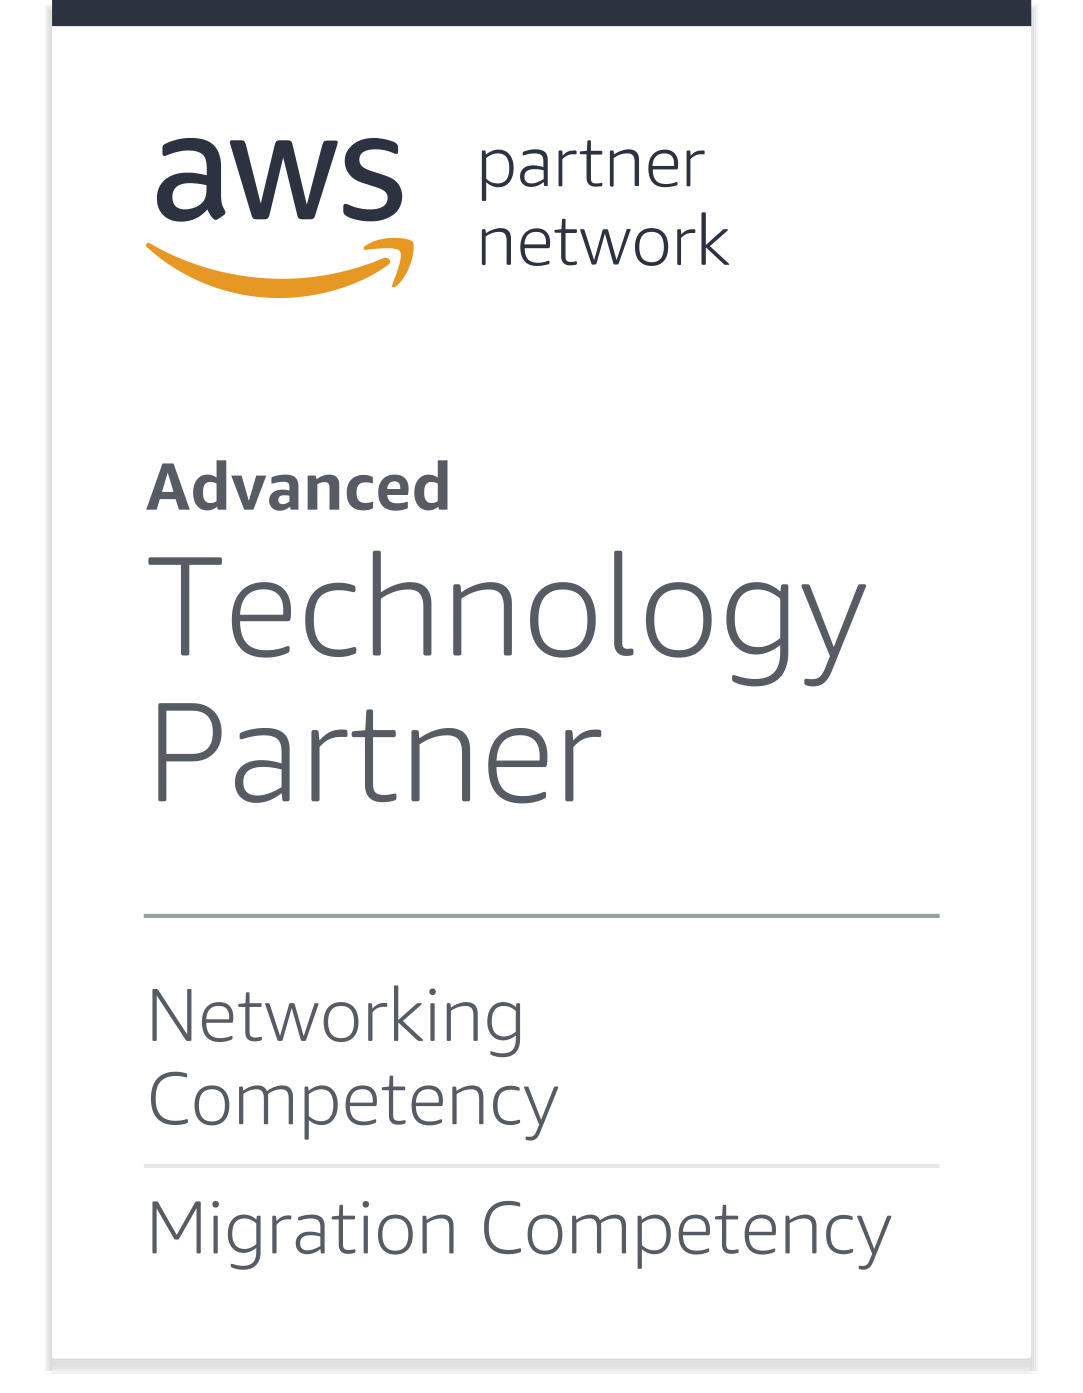 AWS Partner Network: Advanced Technology Partner